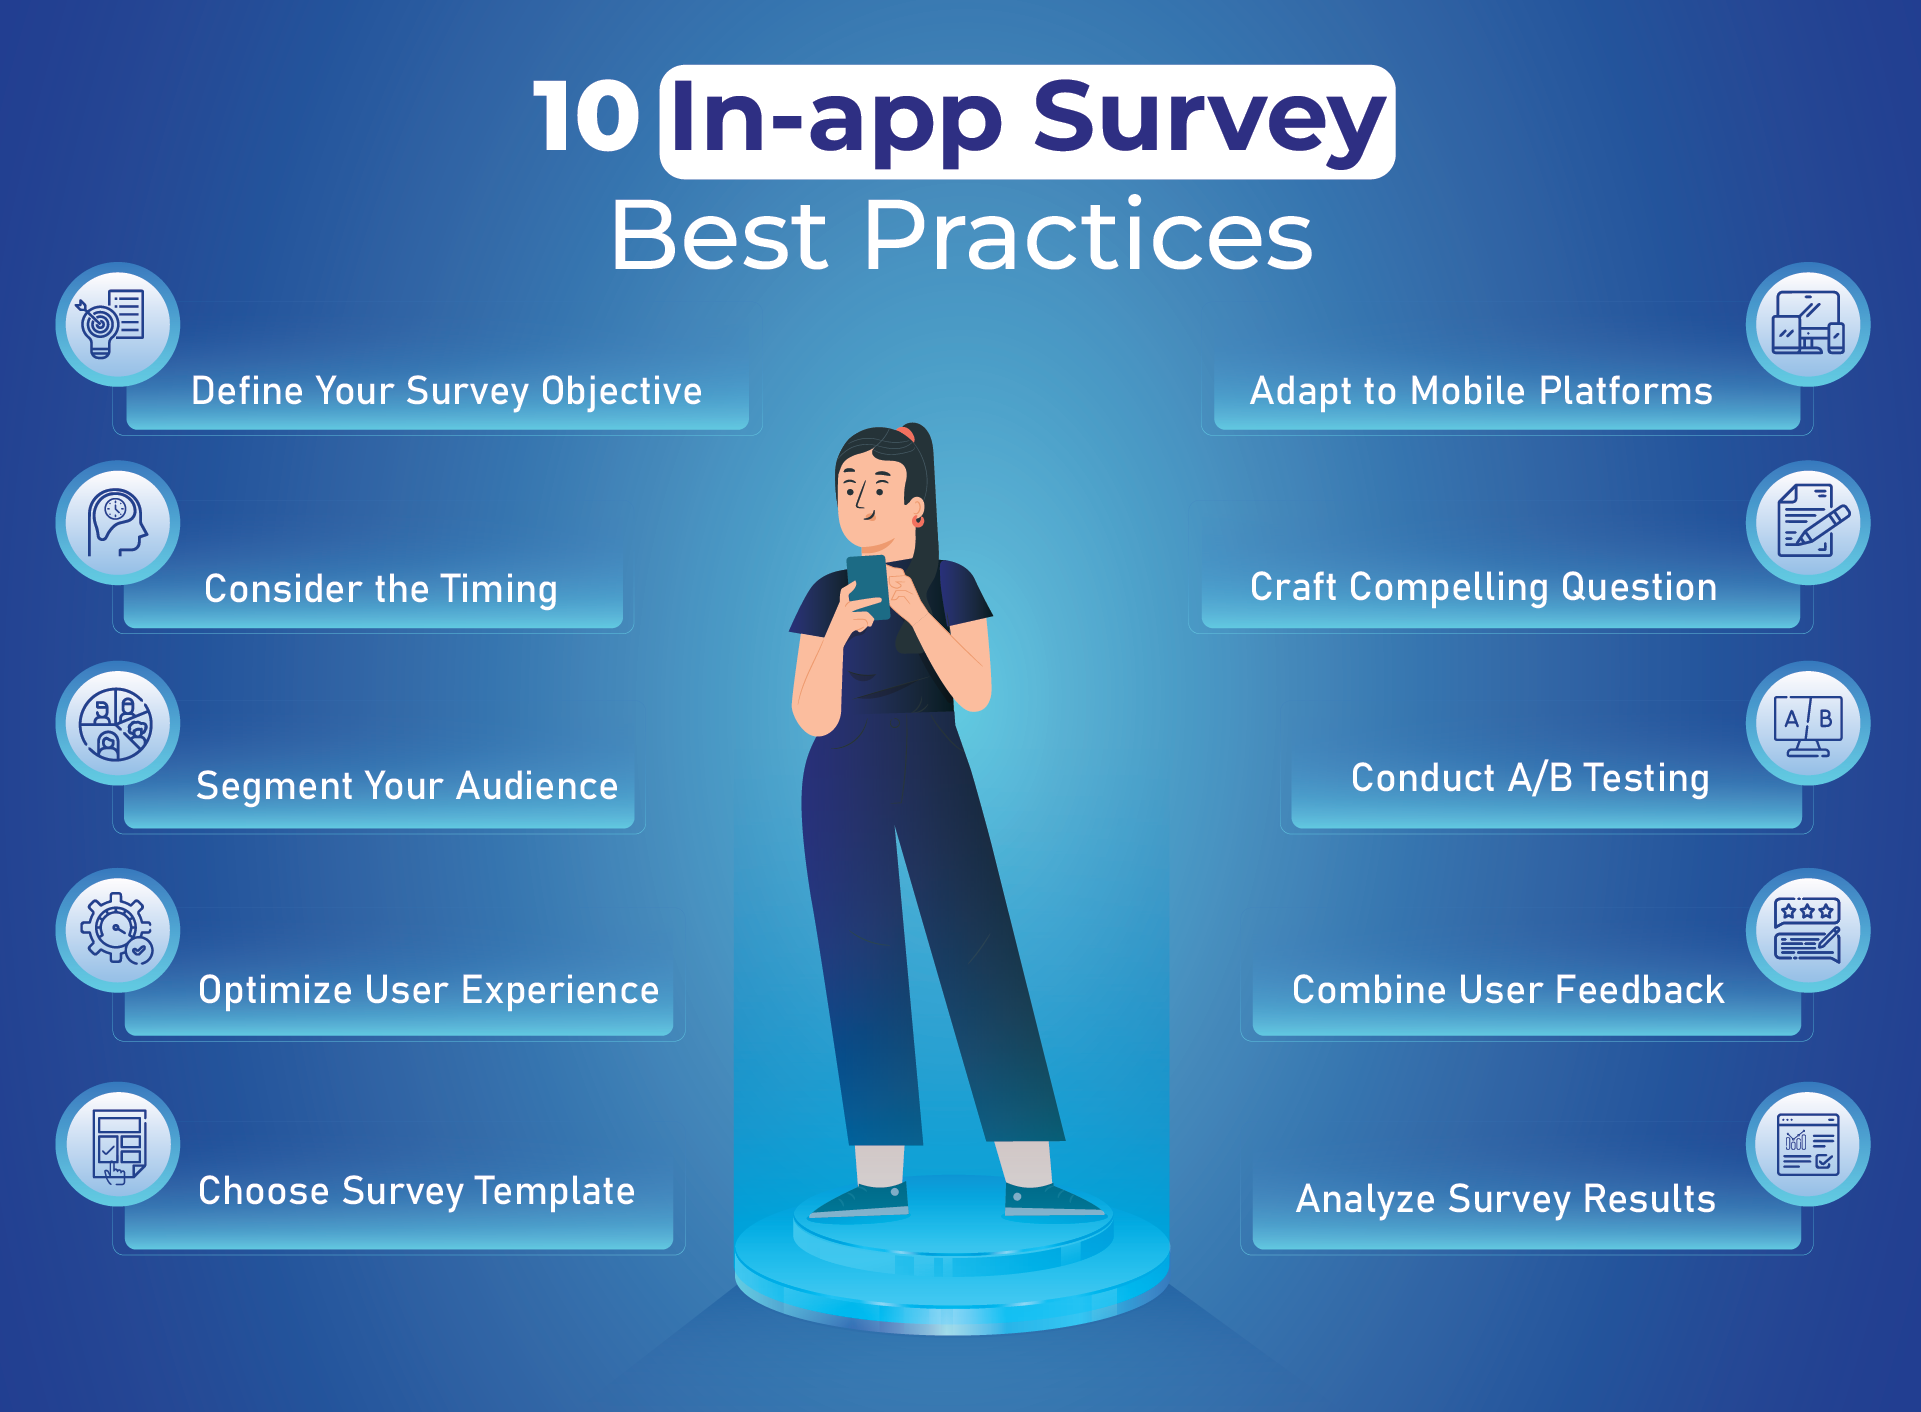 in-app survey best practices